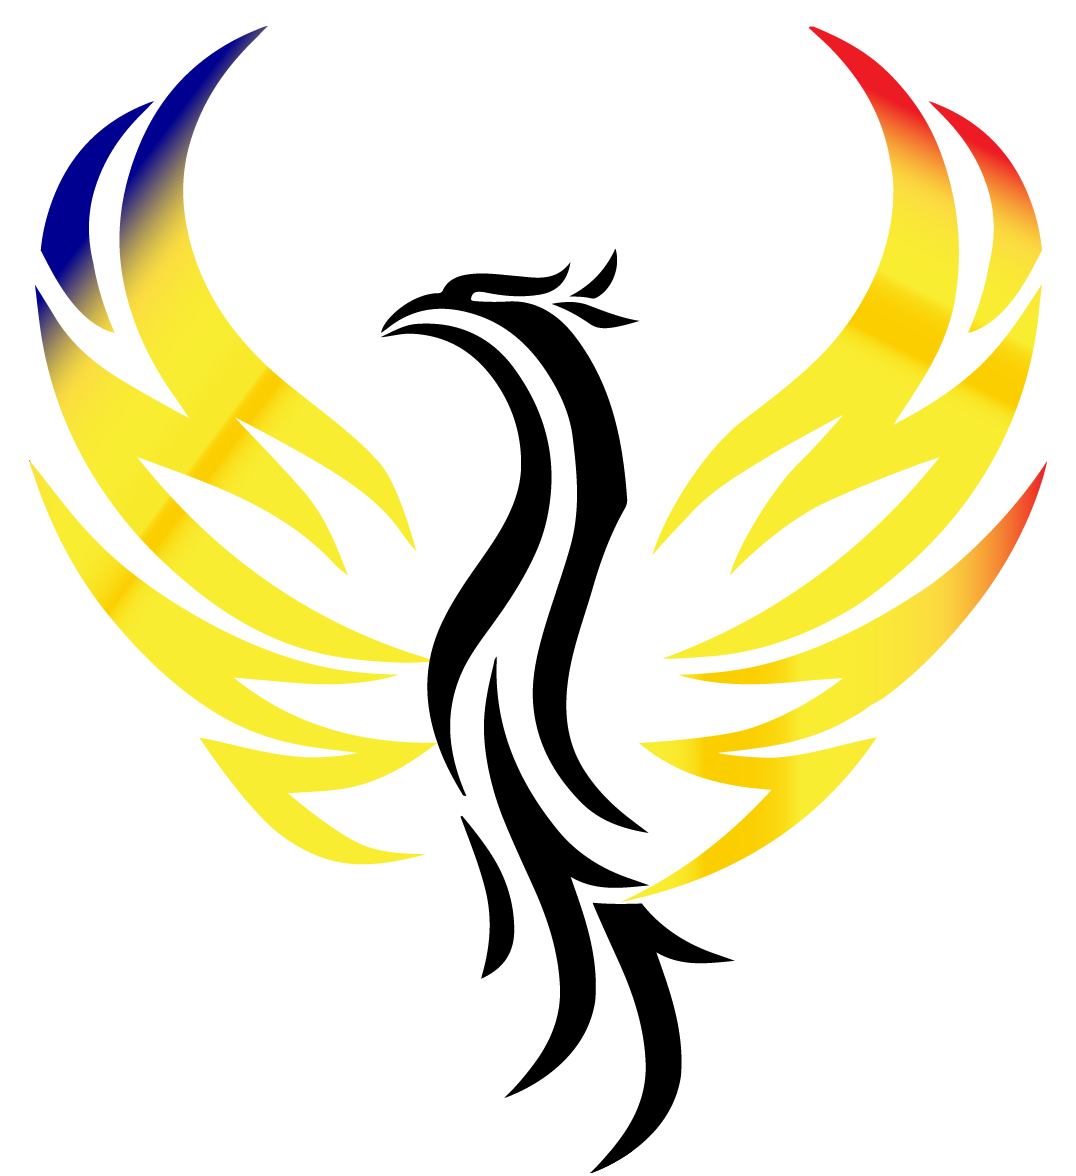 SkyCap Solar logo